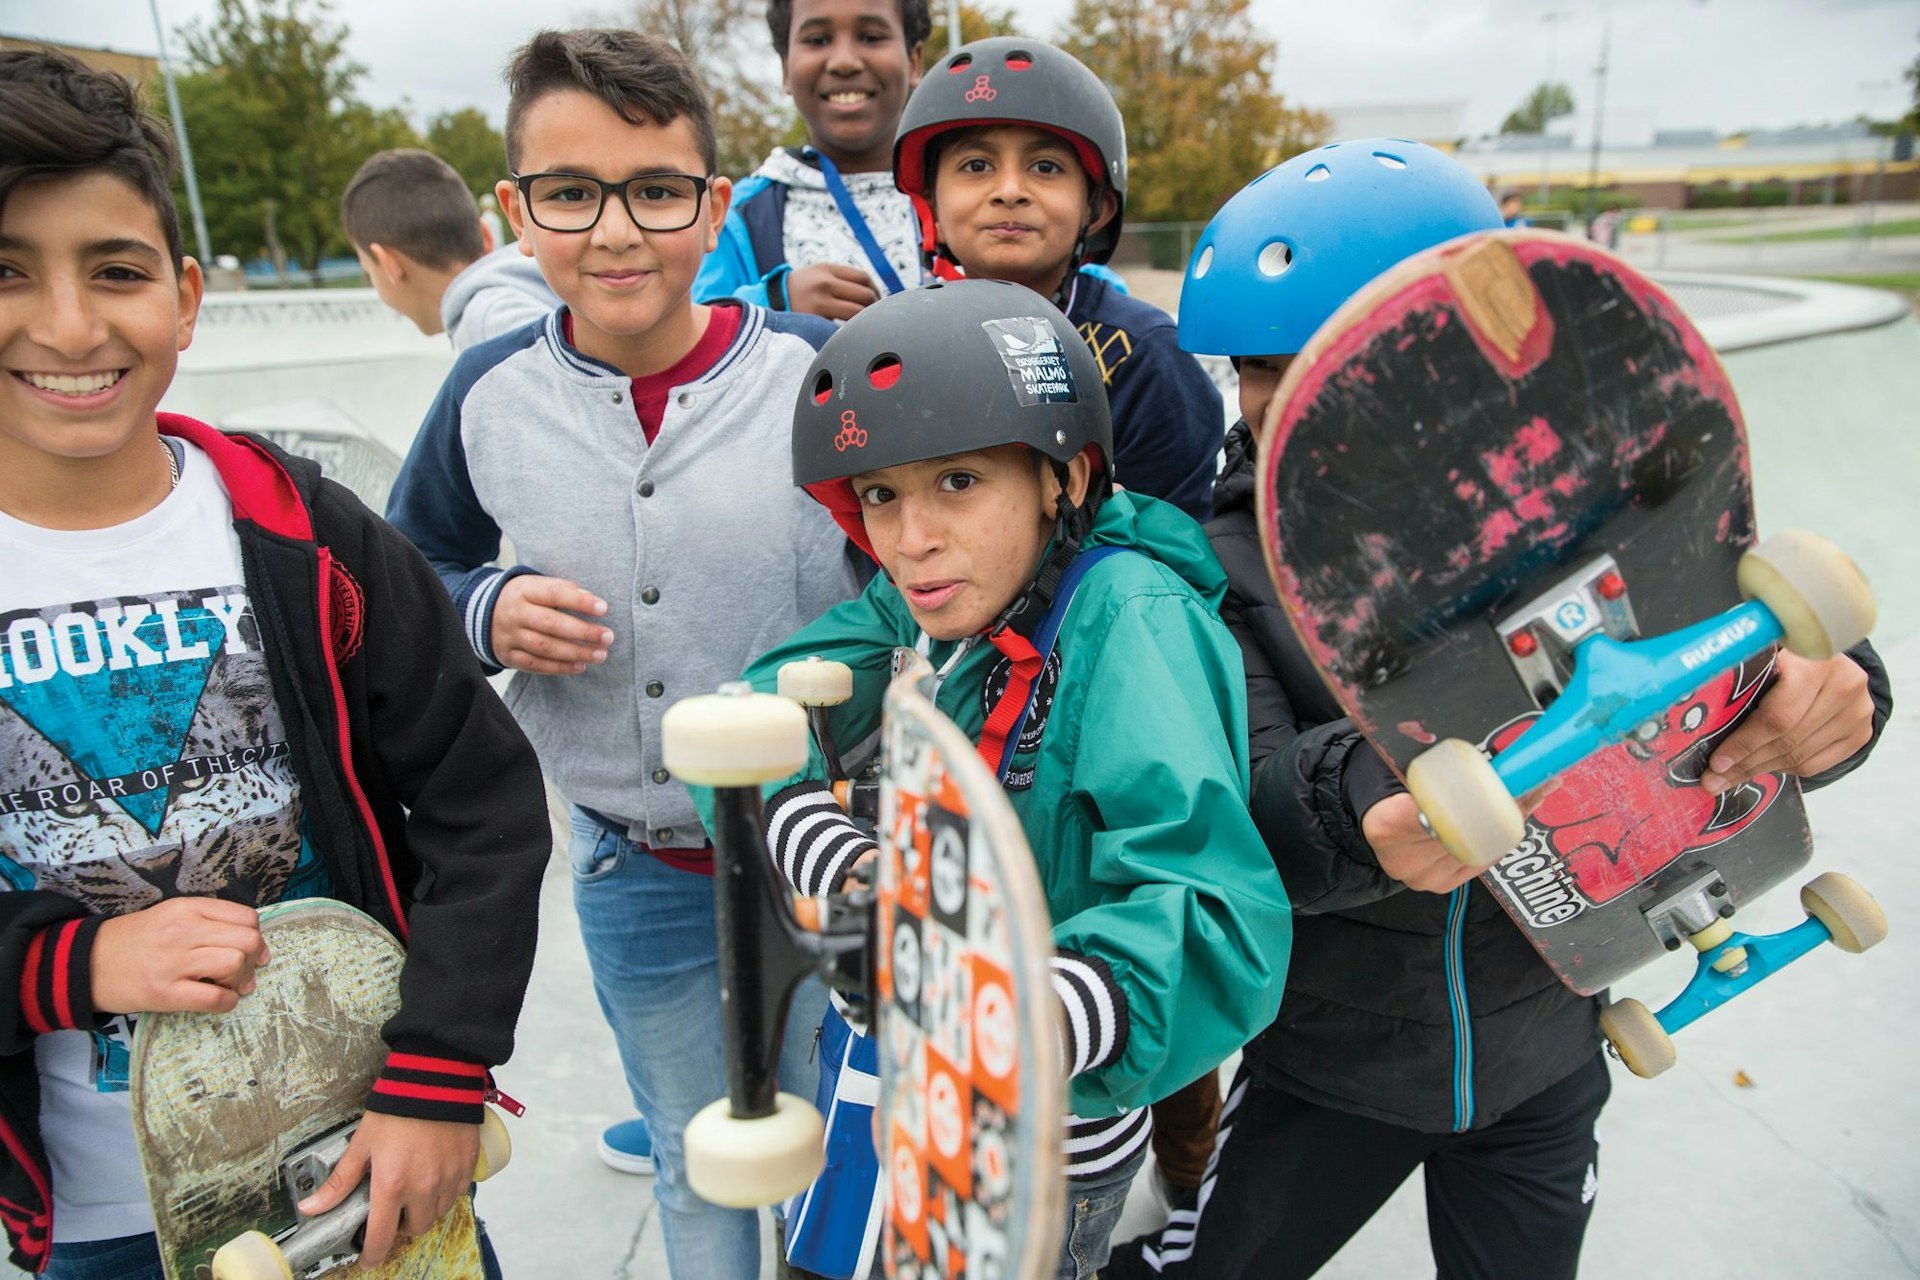 Meet The Kroksbäck Kids, Sweden's Multicultural Skate Family